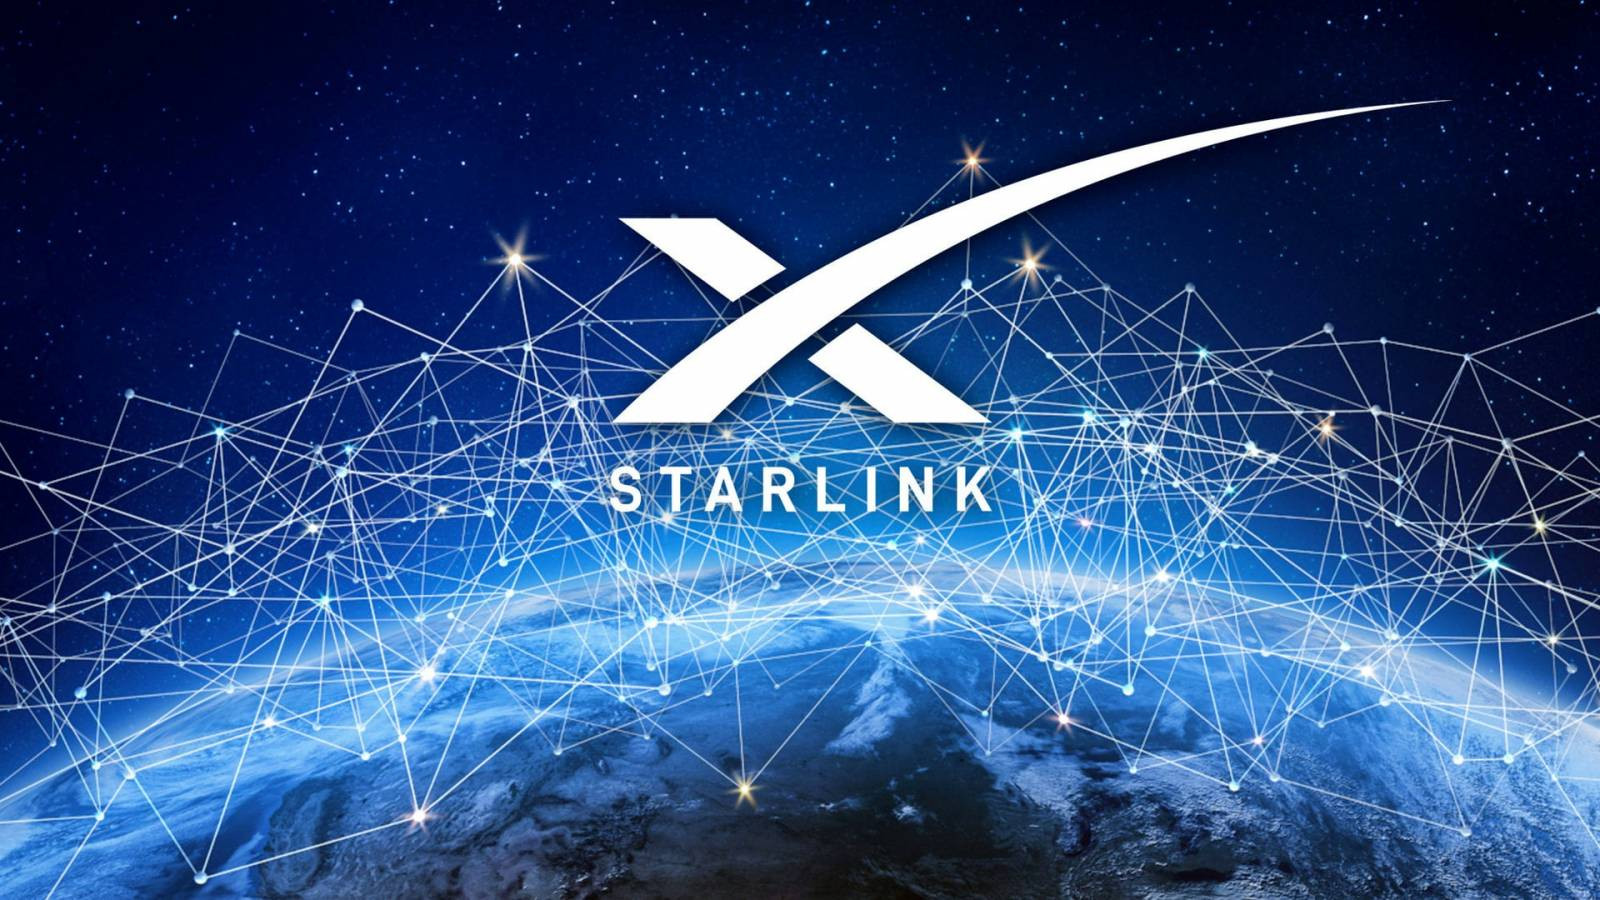 starlink-satellites-eliminate-wired-internet-1